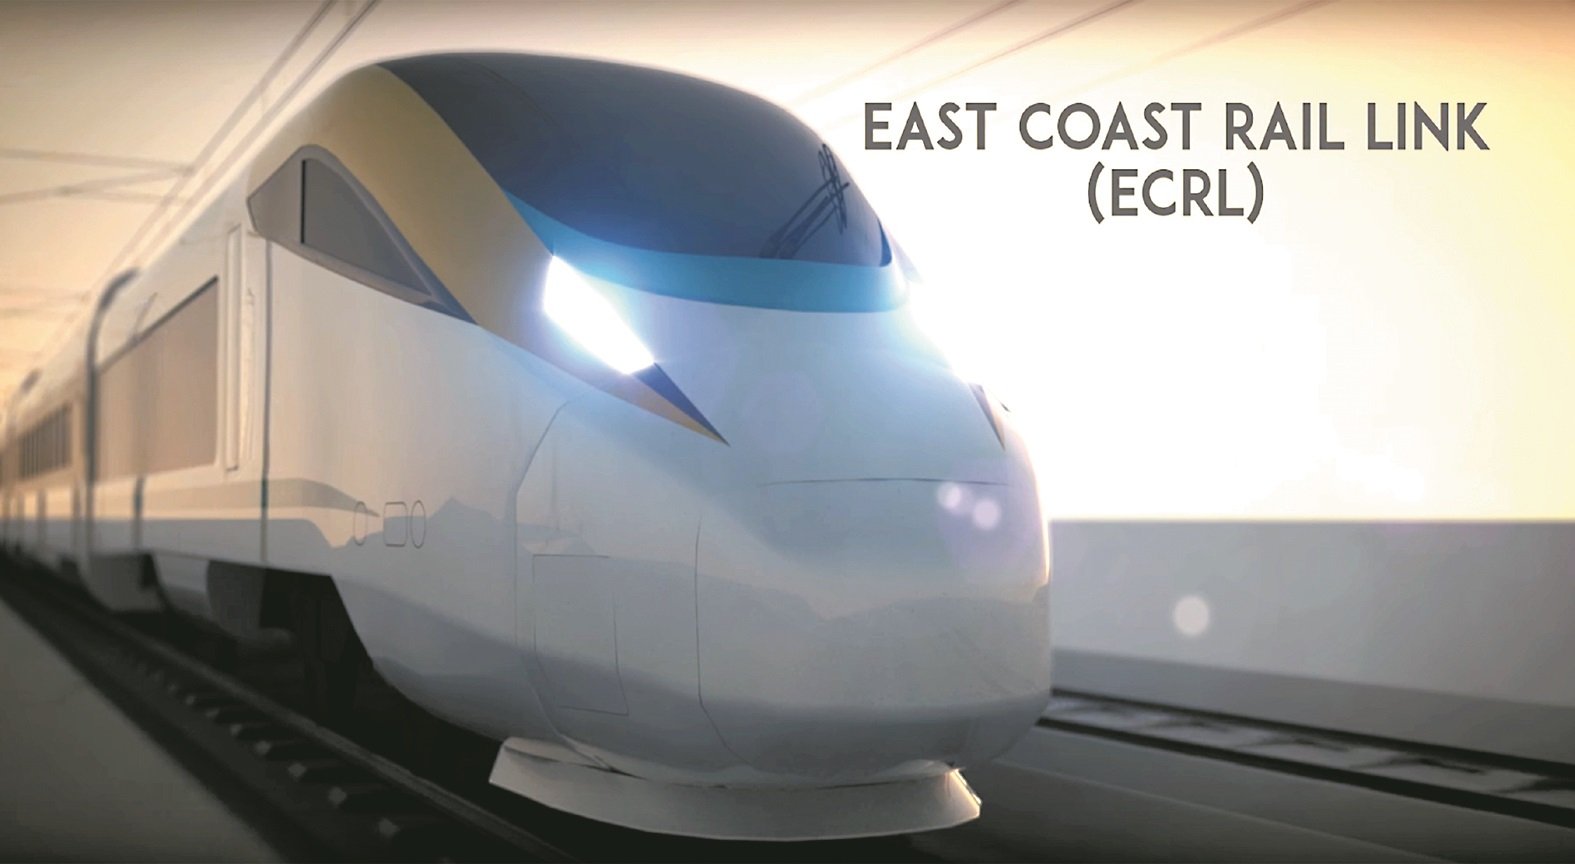 大马衔接铁道公司与中国交通建设股份有限公司在4月12日签署东铁计划补充协议，以重启东铁工程。图为东铁的模拟火车外形。